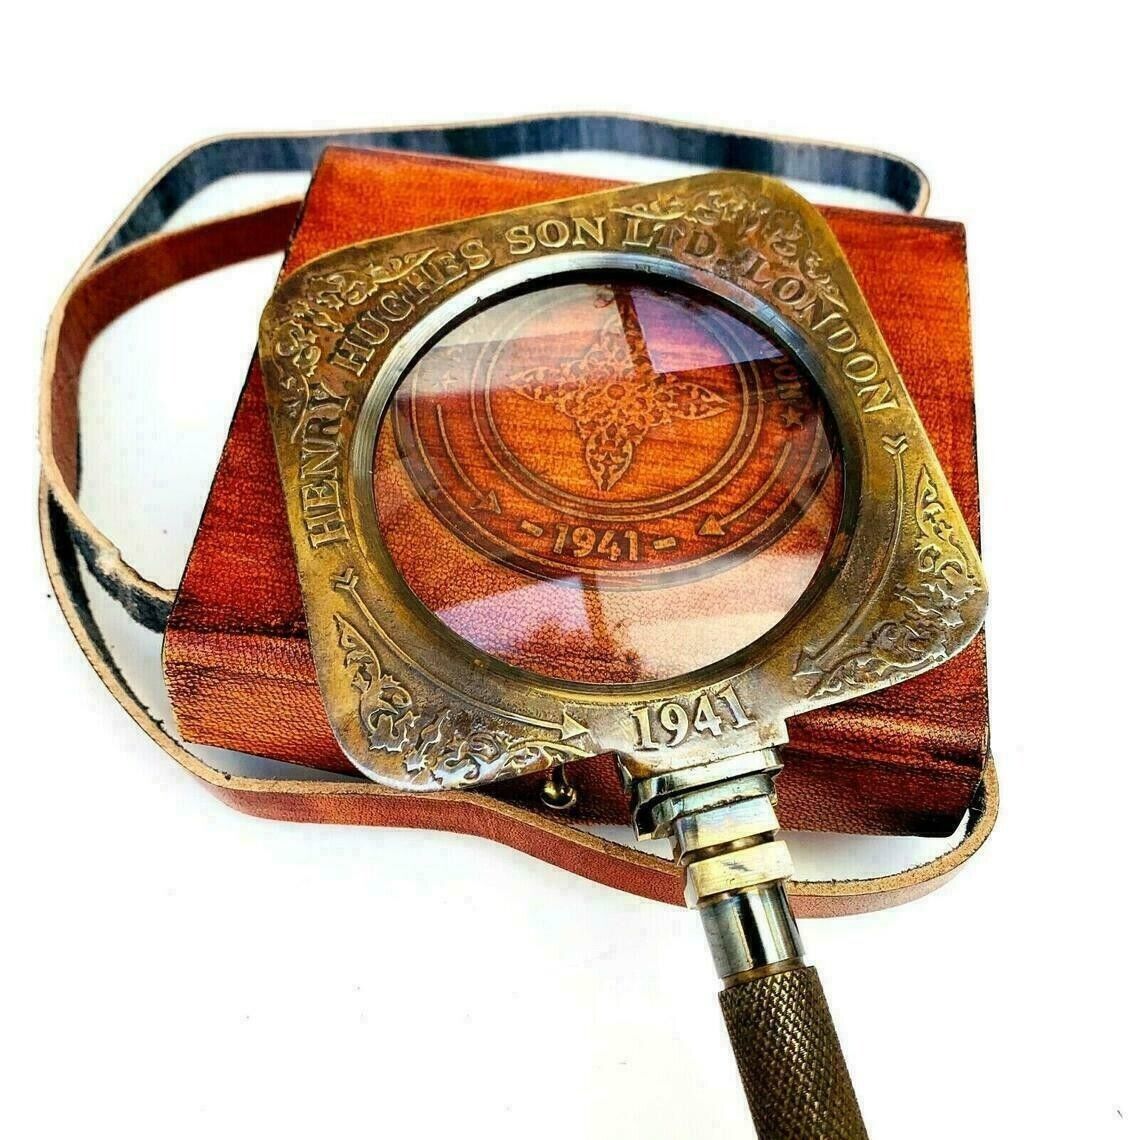 Antique Vintage Brass Henry Hughes Desk Magnifier Folding Magnifying Glass Gift